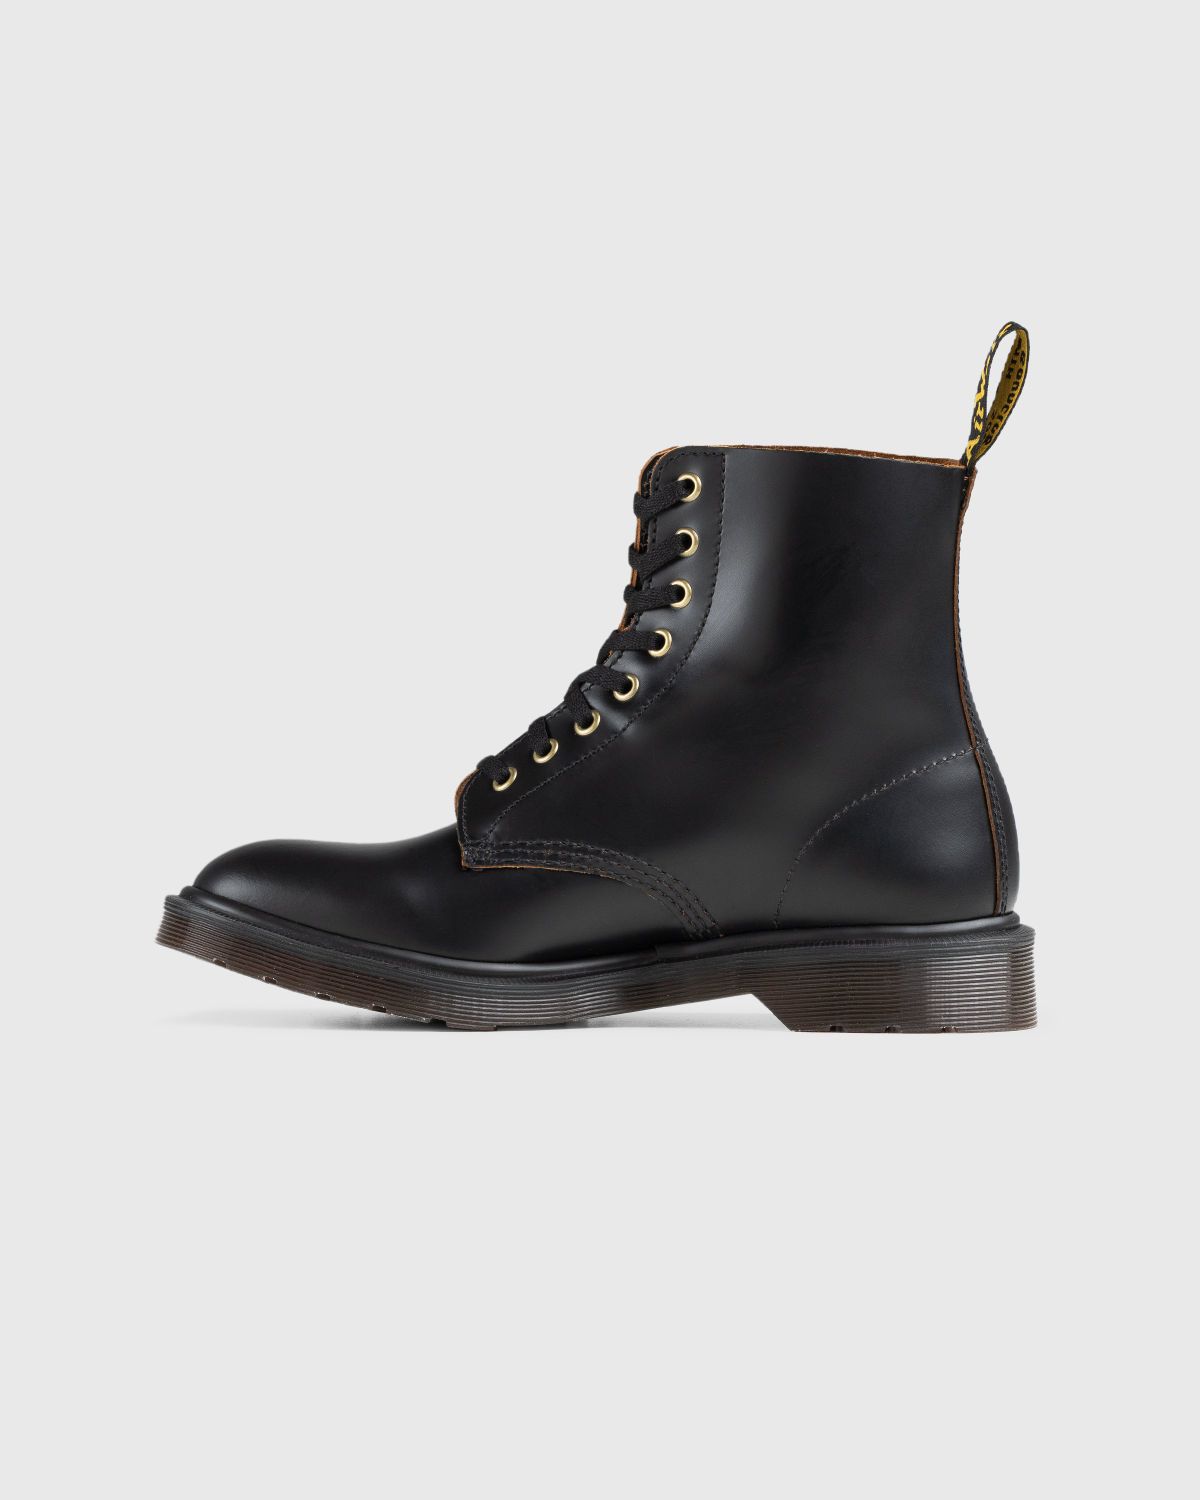 Dr. Martens – 1460 Vintage Smooth Black - Laced Up Boots - Black - Image 2